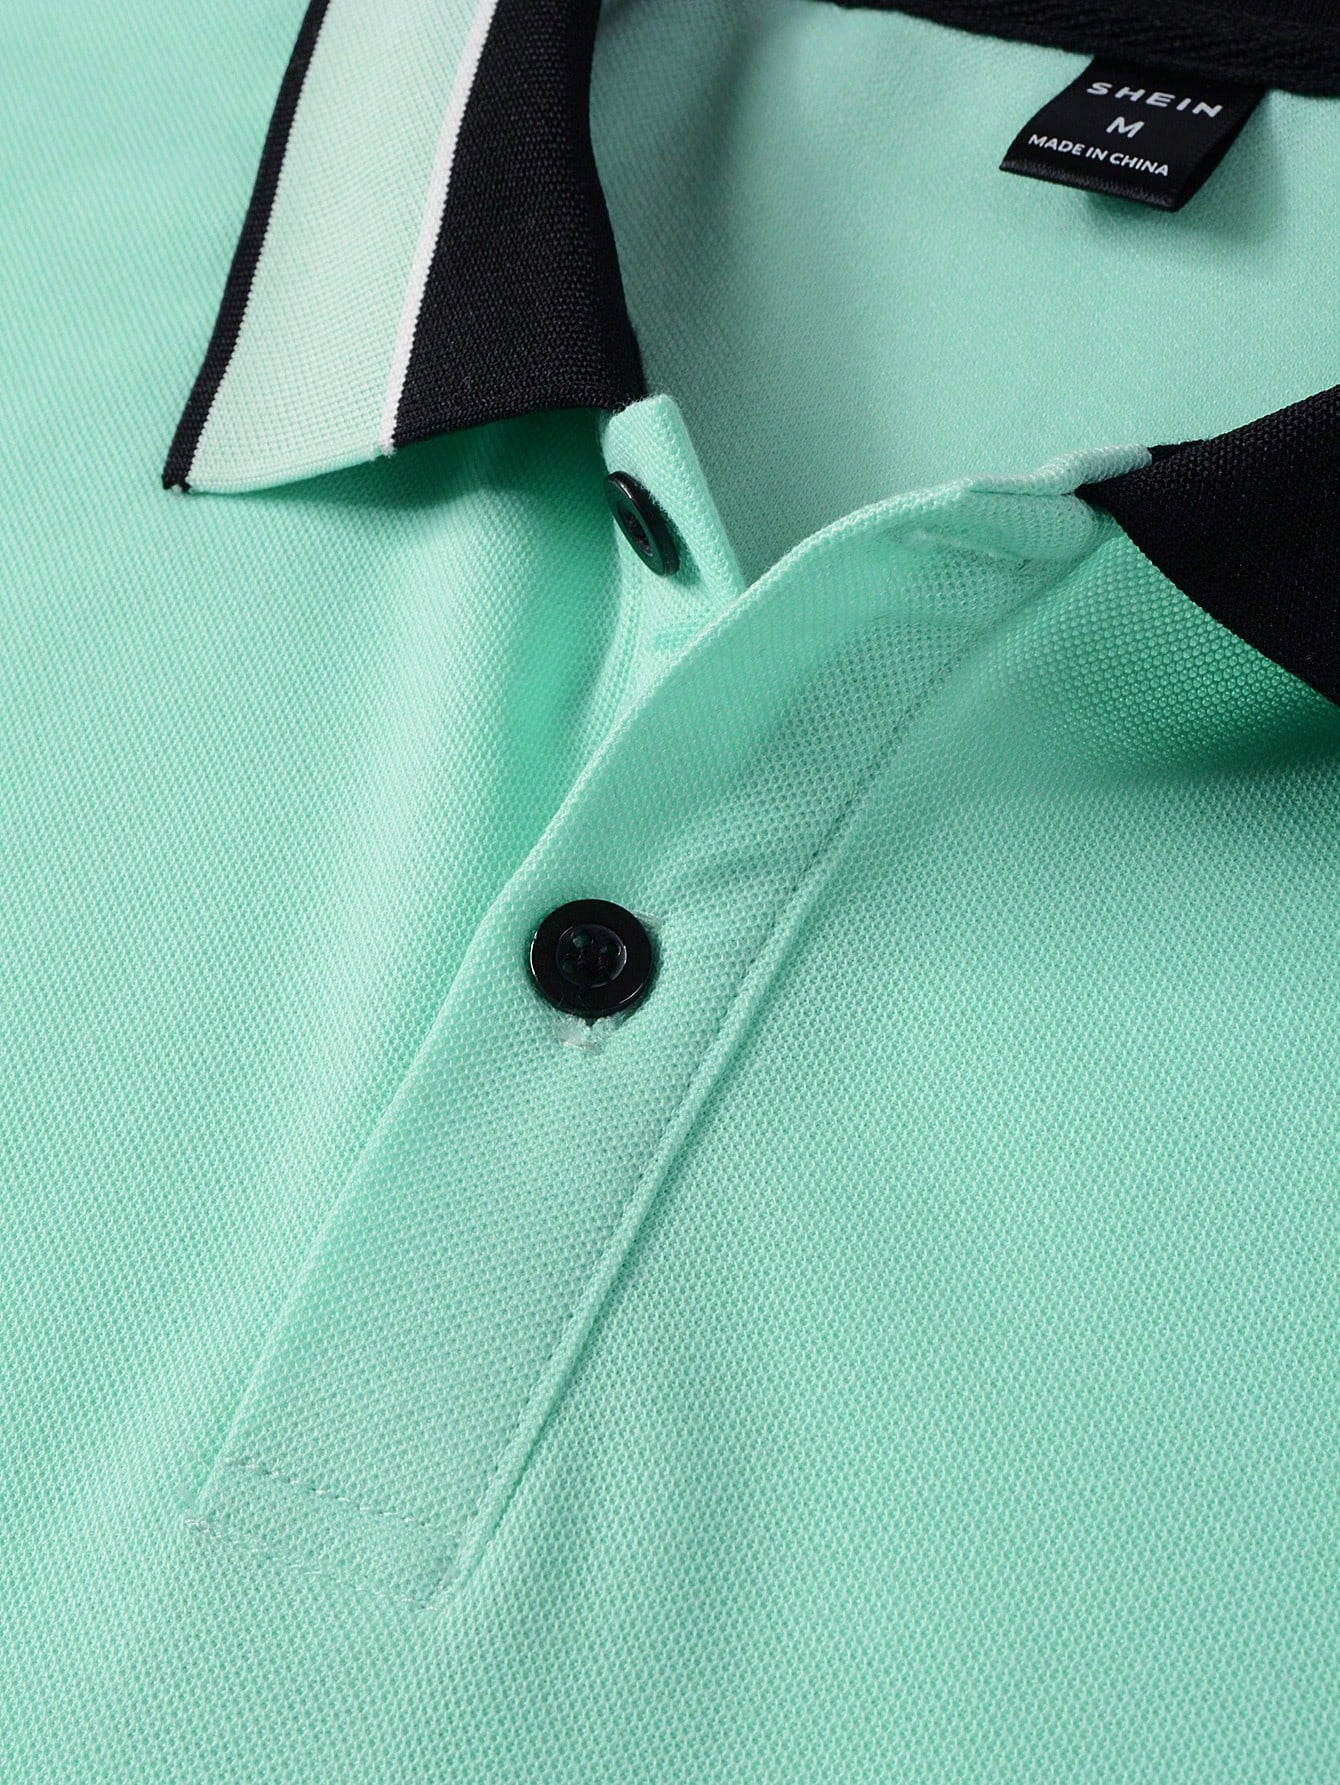 Manfinity Mode Men Graphic Print Contrast Trim Polo Shirt